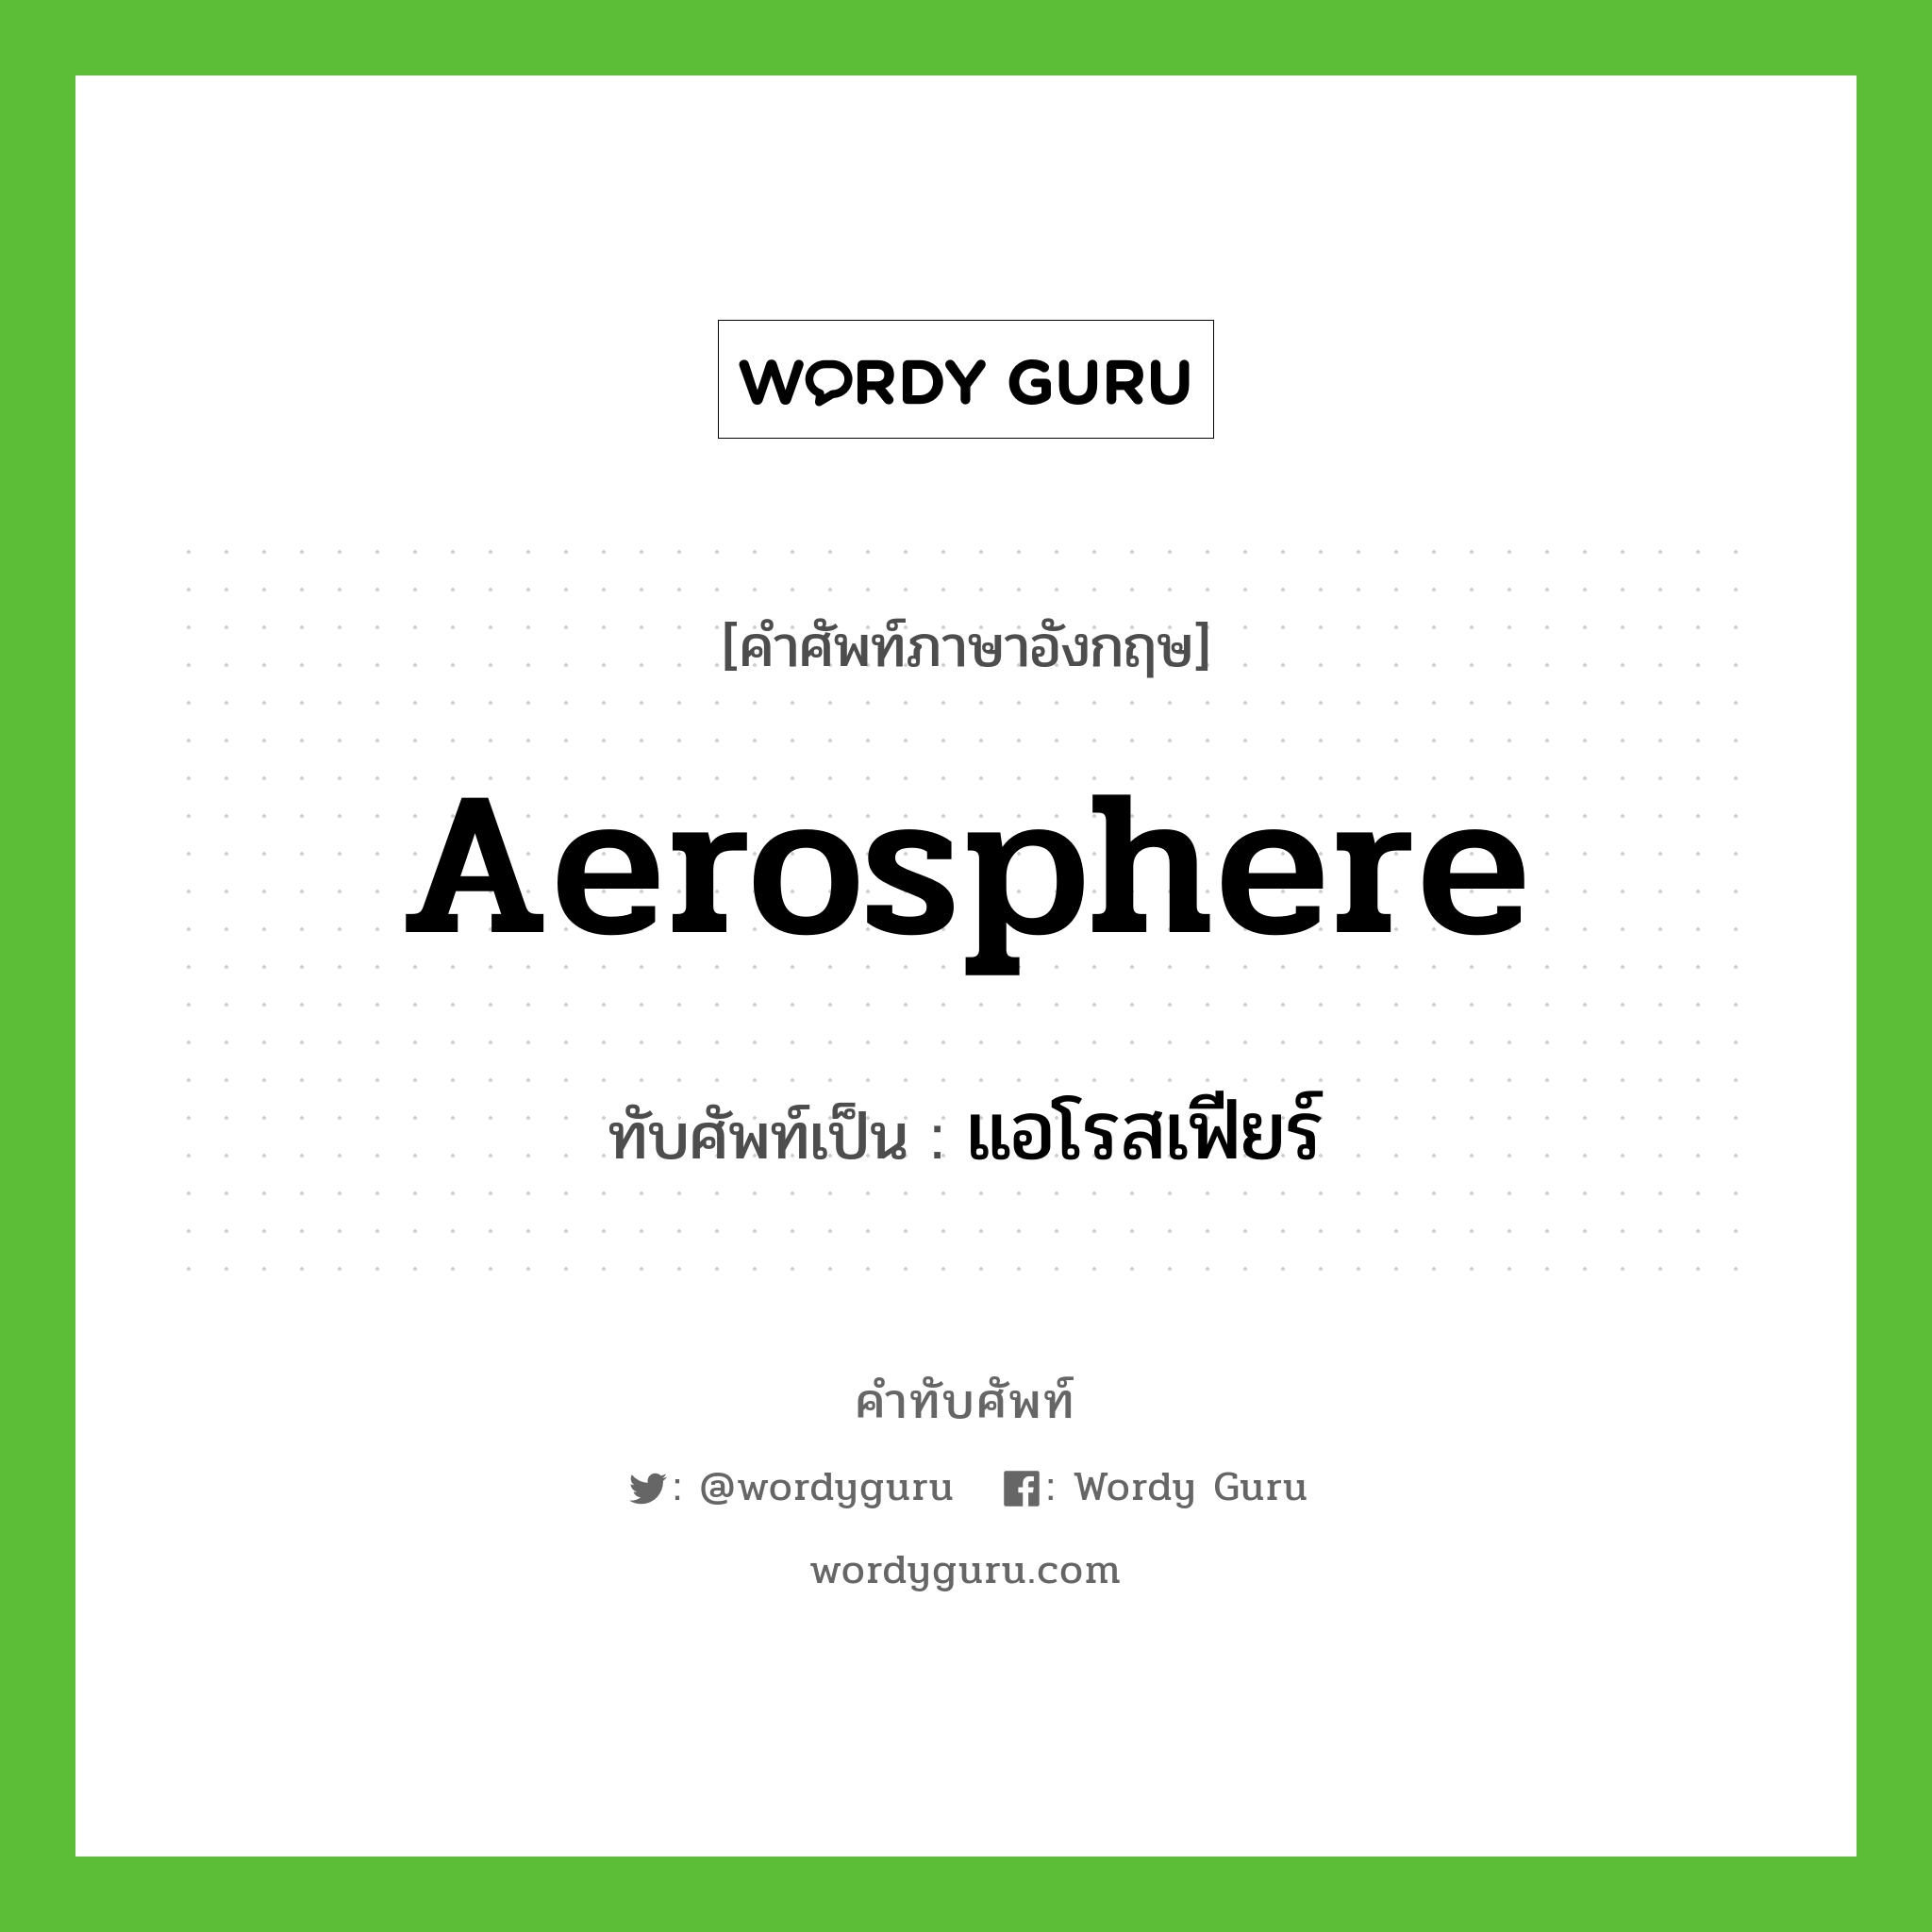 aerosphere เขียนเป็นคำไทยว่าอะไร?, คำศัพท์ภาษาอังกฤษ aerosphere ทับศัพท์เป็น แอโรสเฟียร์